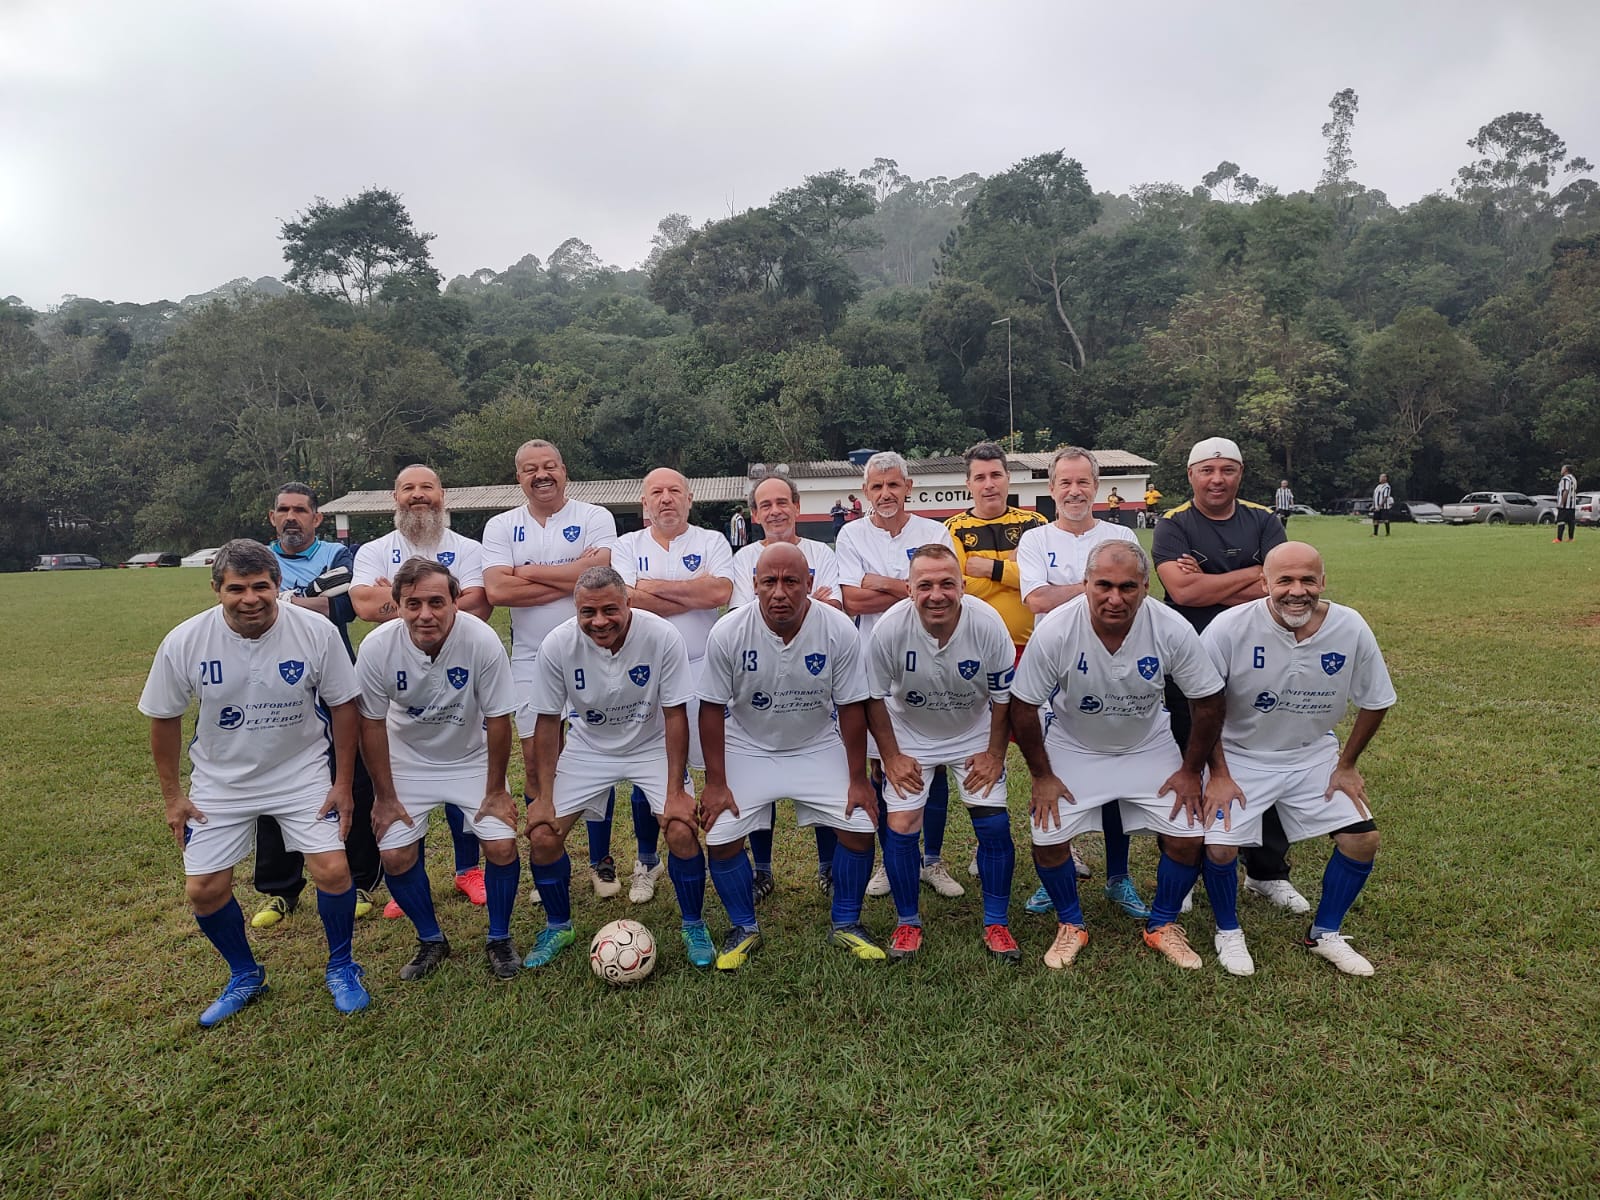 Mais de 110 times seguem na disputa do Campeonato Municipal de Futebol de  Cotia – Prefeitura de Cotia